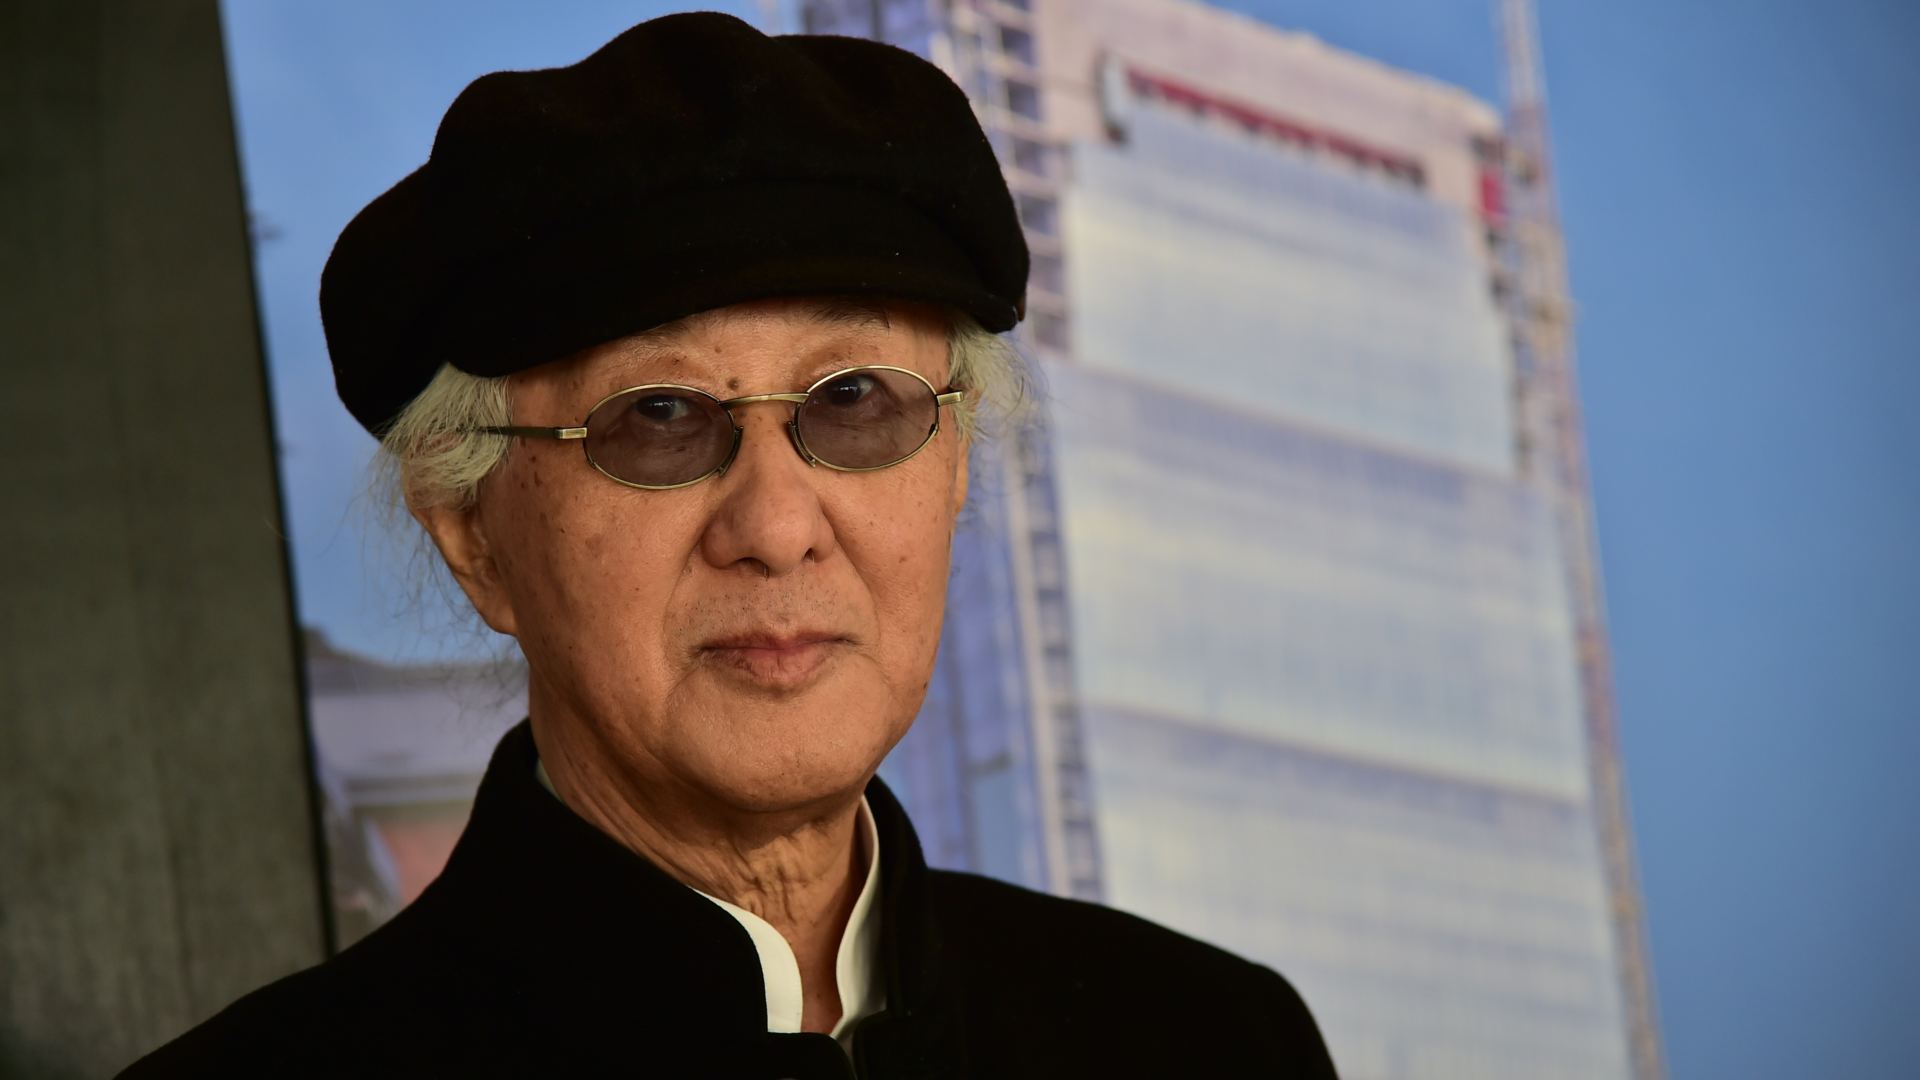 El japonés Arata Isozaki gana el premio Pritzker, el "Nobel de Arquitectura"